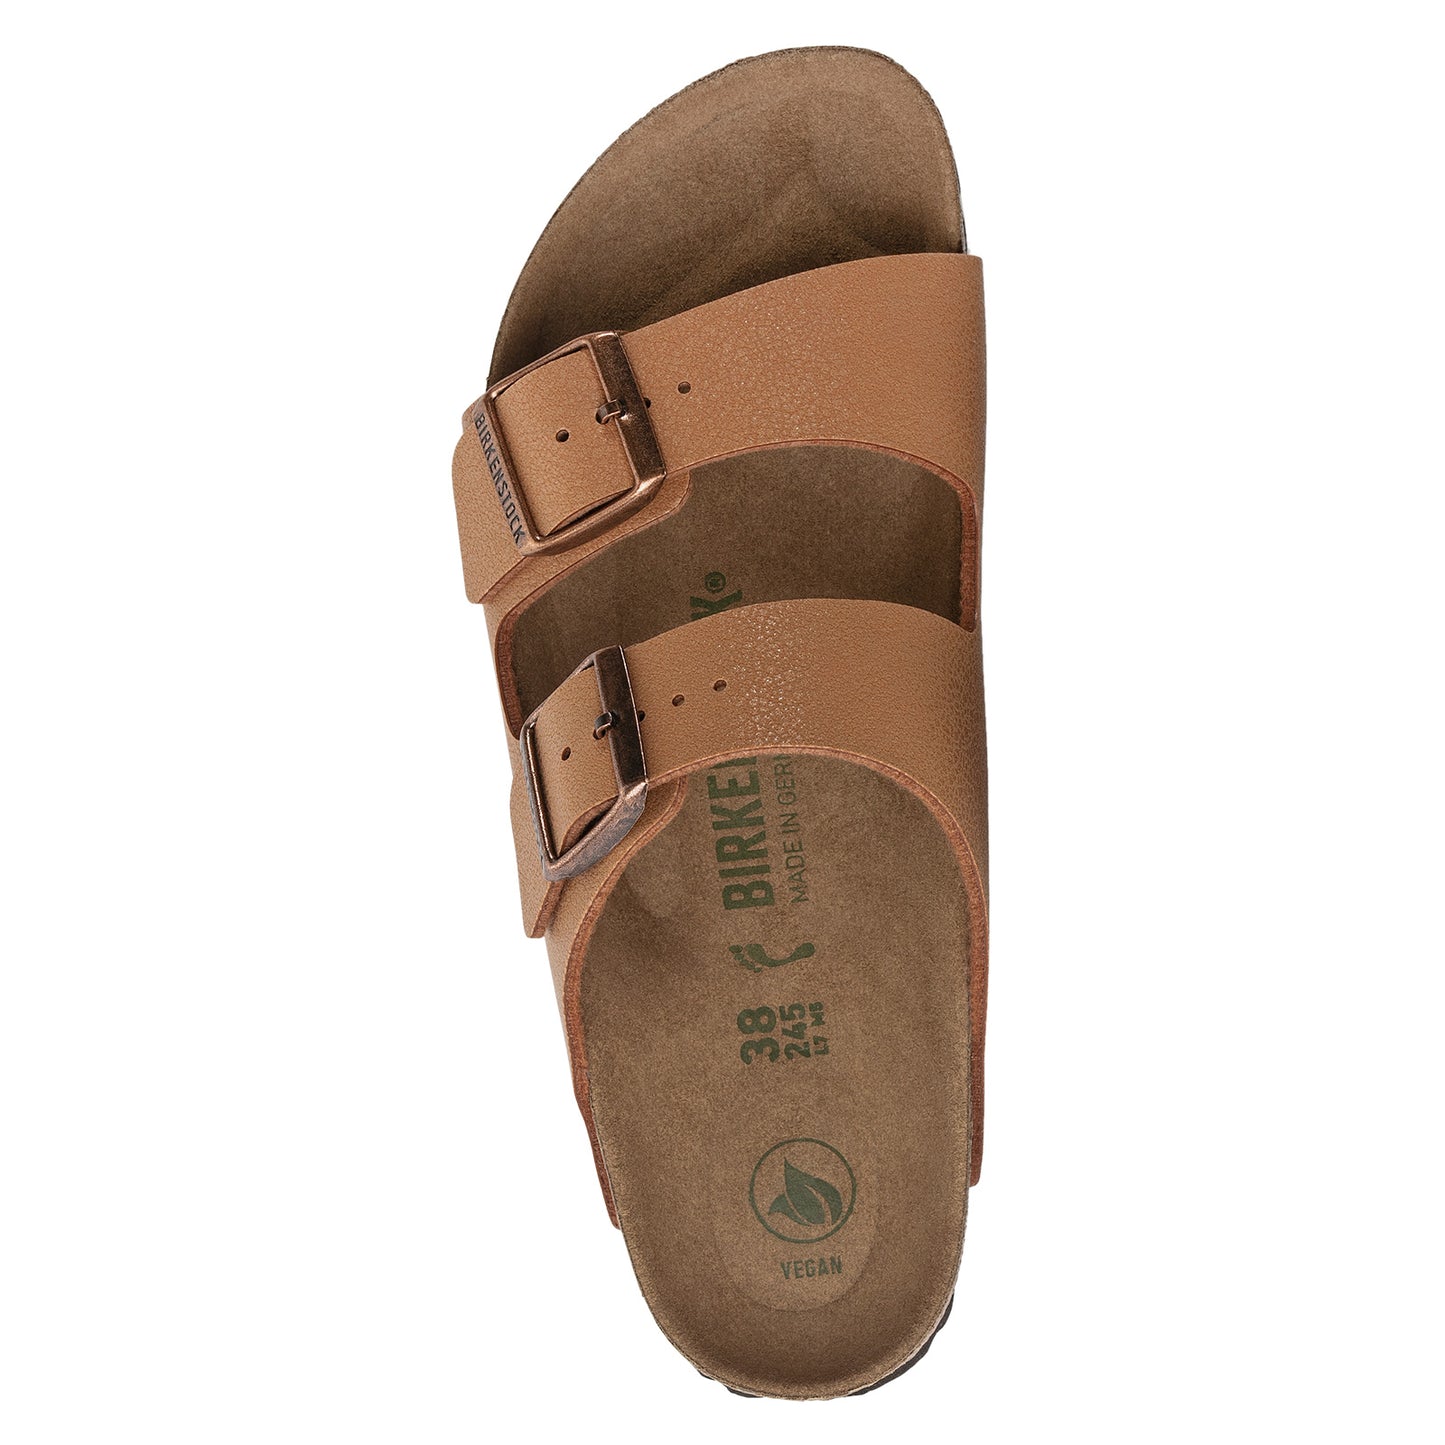 Peltz Shoes  Women's Birkenstock Arizona Vegan Slide Sandal - Narrow Width PECAN 1025 046 N